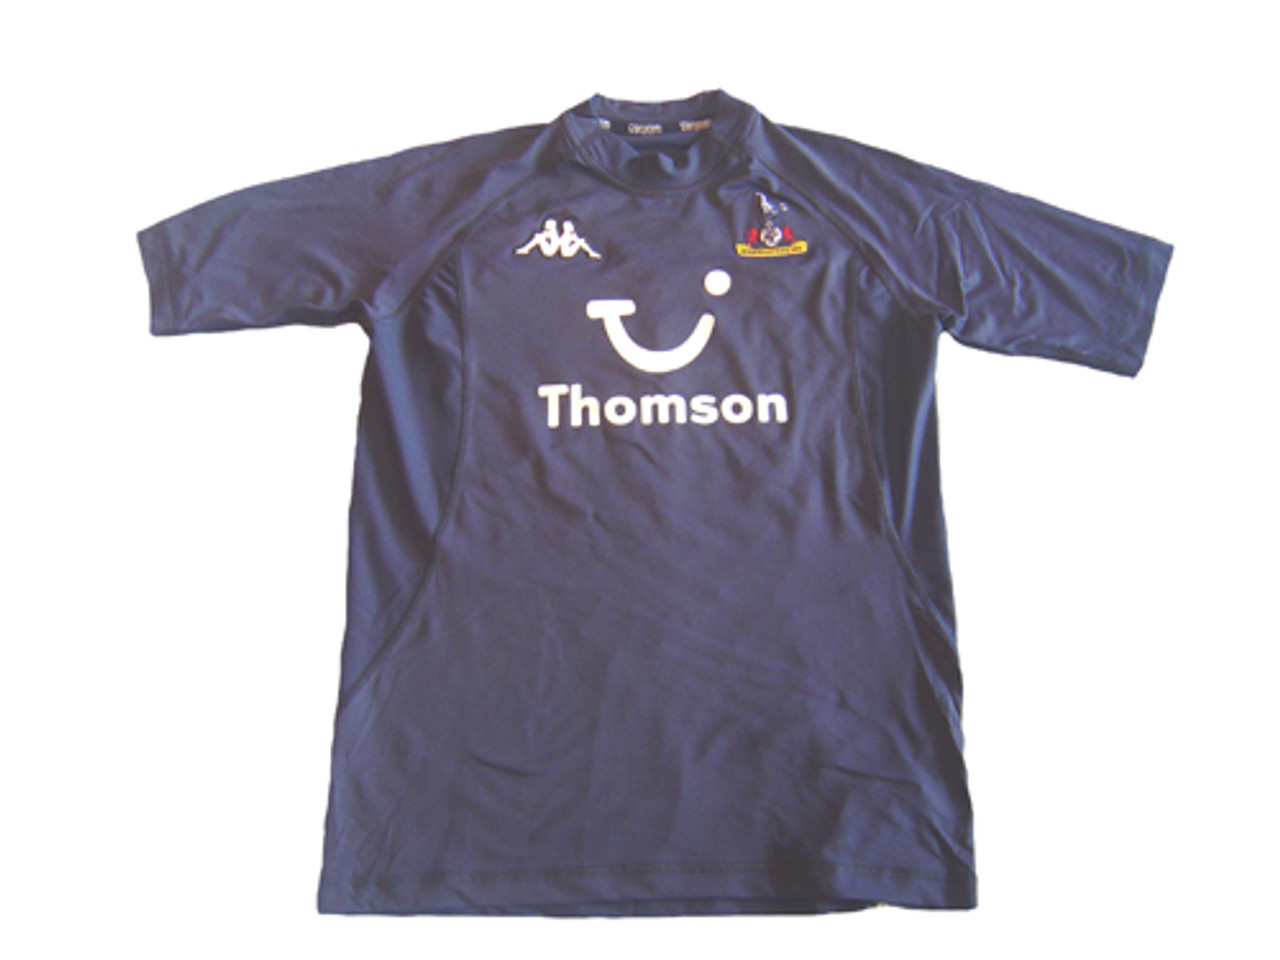 Kappa Original Kappa football shirt Tottenham Hotspur 2005/06